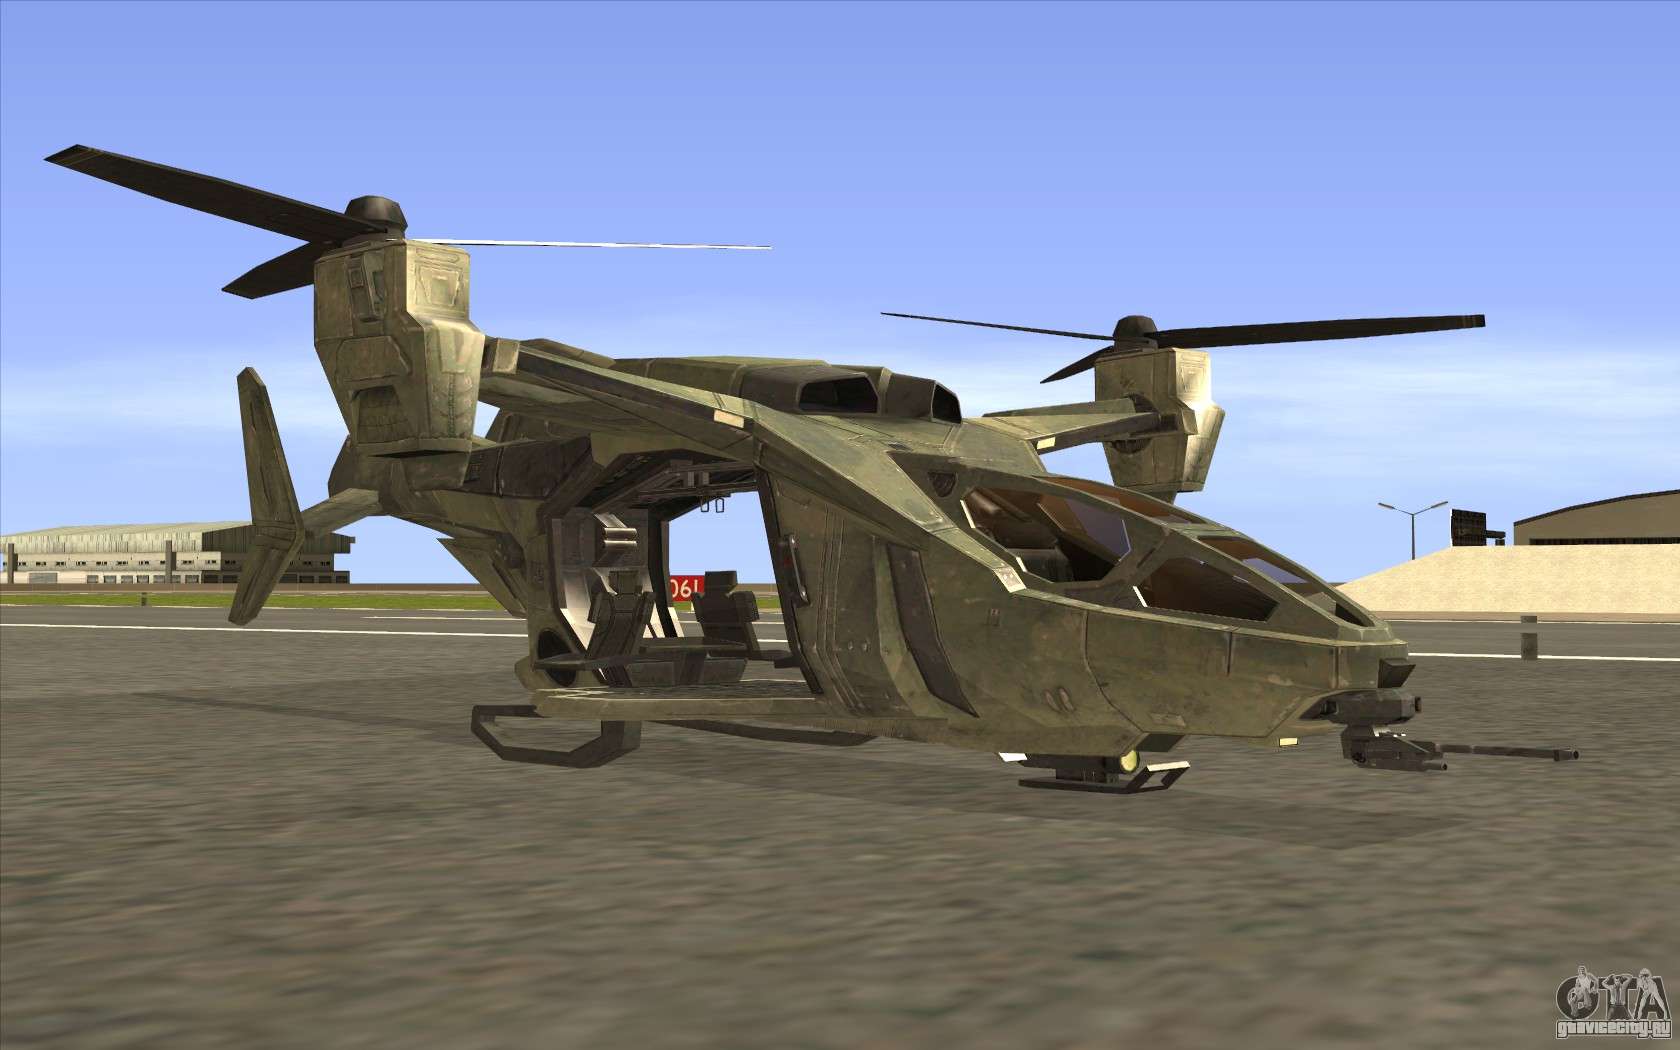 Гта мод вертолет. Вертолет Hunter GTA San Andreas. ГТА Сан андреас вертолет Хантер. GTA San Andreas вертолет. Вертолеты Hunter для ГТА Сан андреас.